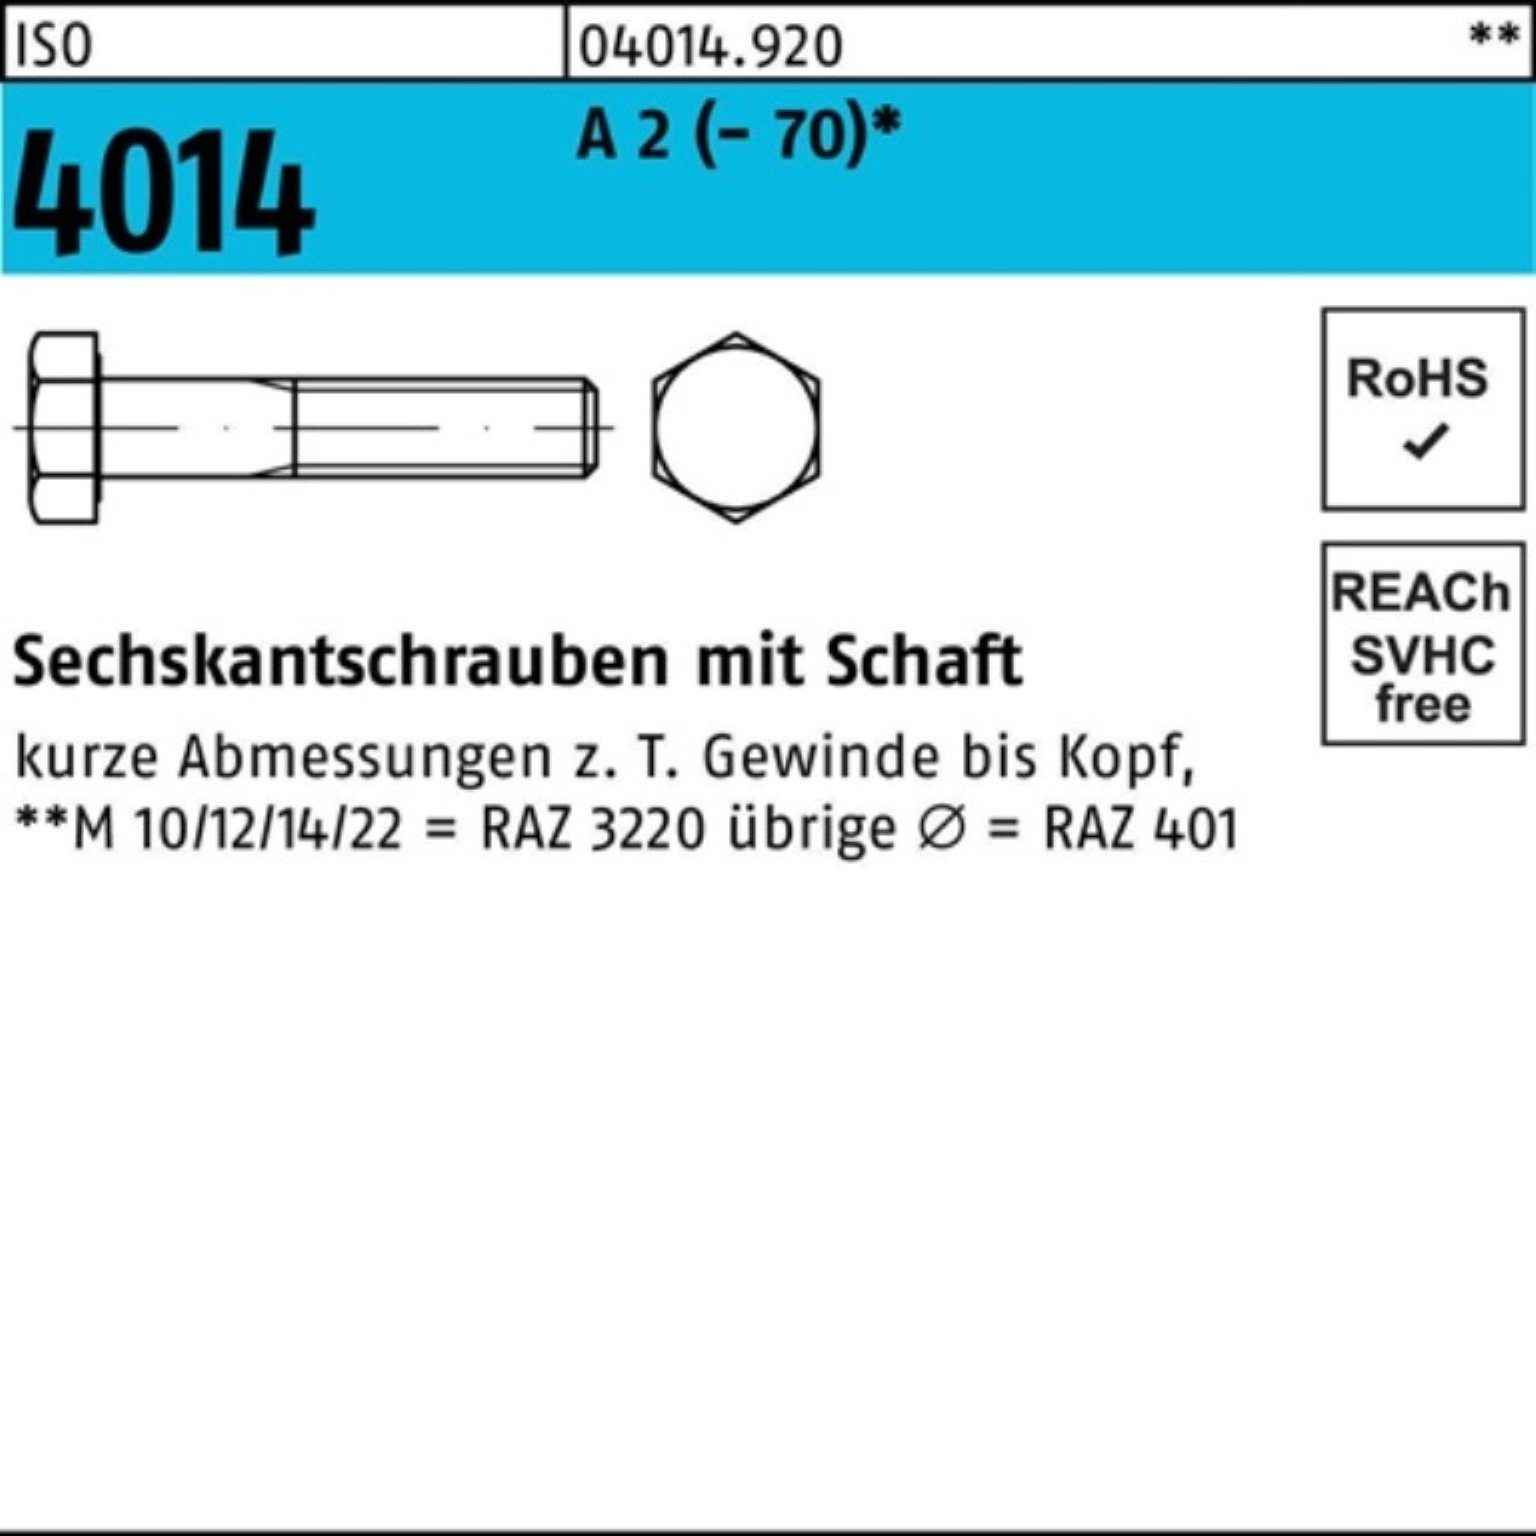 Bufab Sechskantschraube 100er Pack Sechskantschraube ISO 4014 Schaft M12x 280 A 2 (70) 1 St